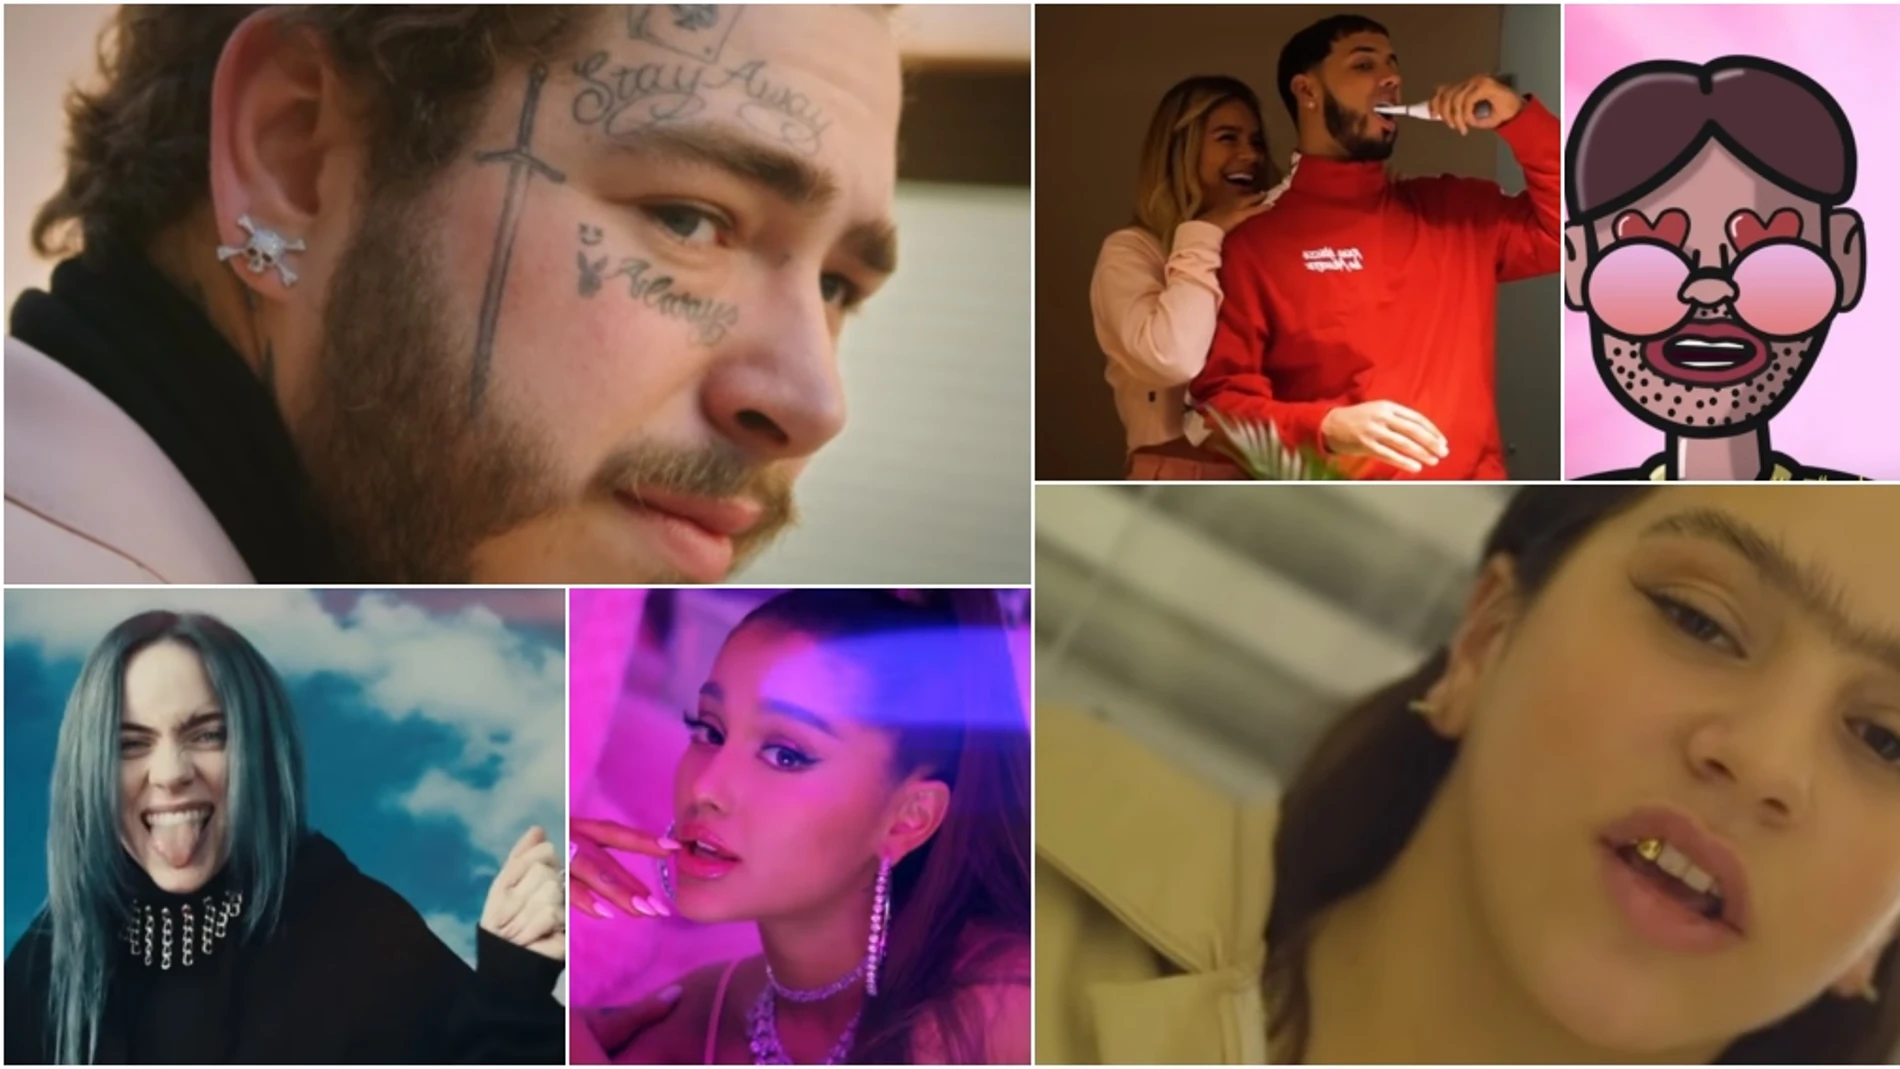 Los artistas y las canciones más escuchadas en Spotify en 2019